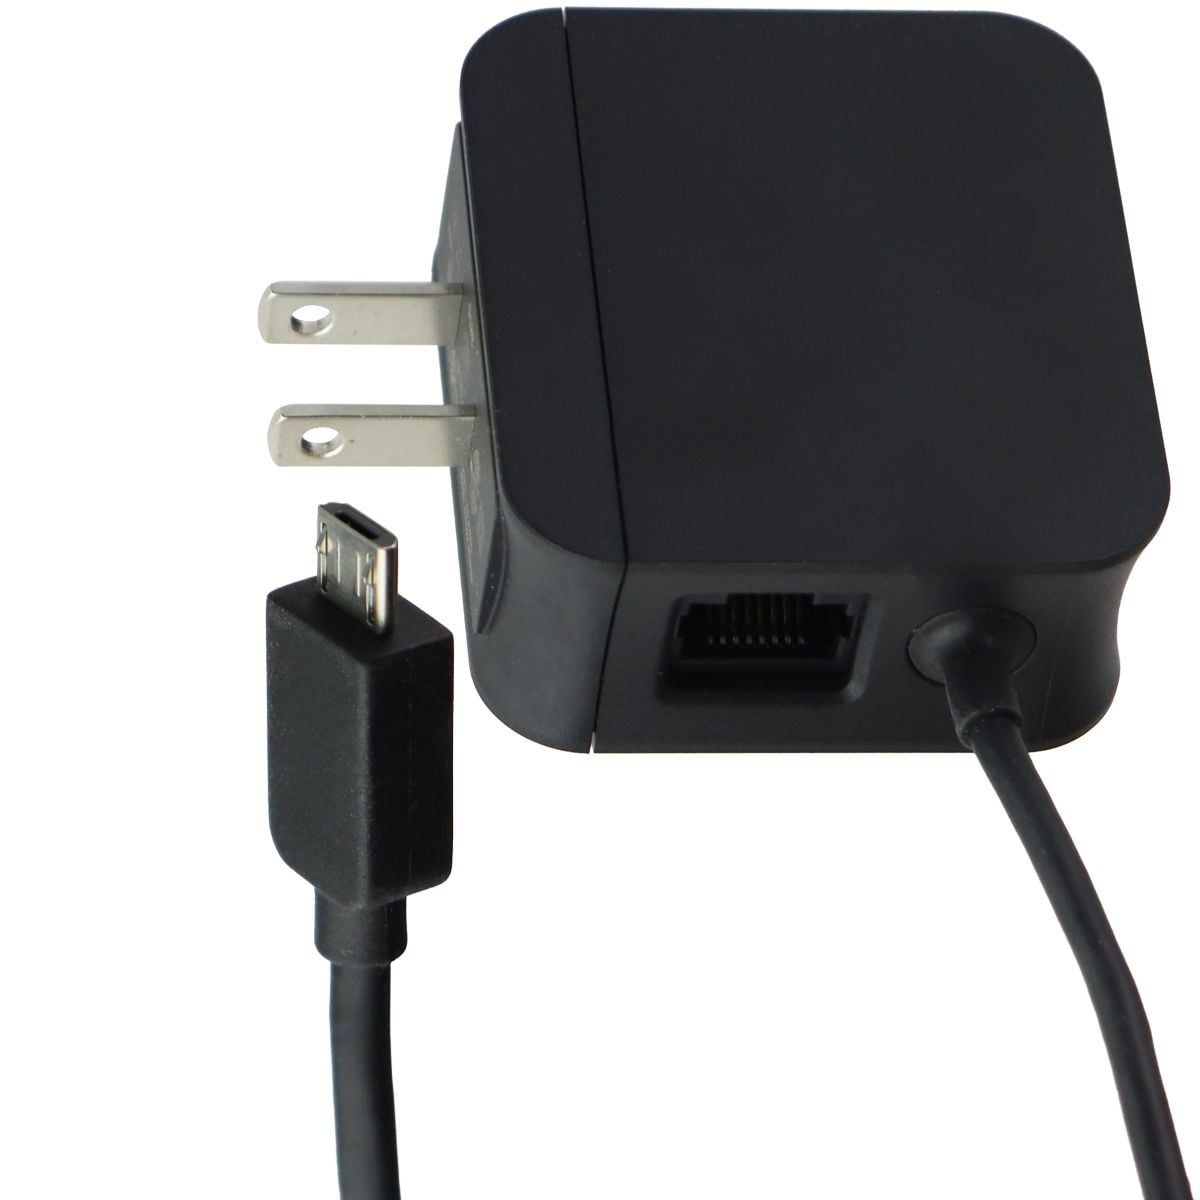 Vær stille Enig med kapok Restored Google Chromecast Ethernet Adapter (5V/1.5A) Micro-USB Cable  (6.5FT) - Black (Refurbished) - Walmart.com